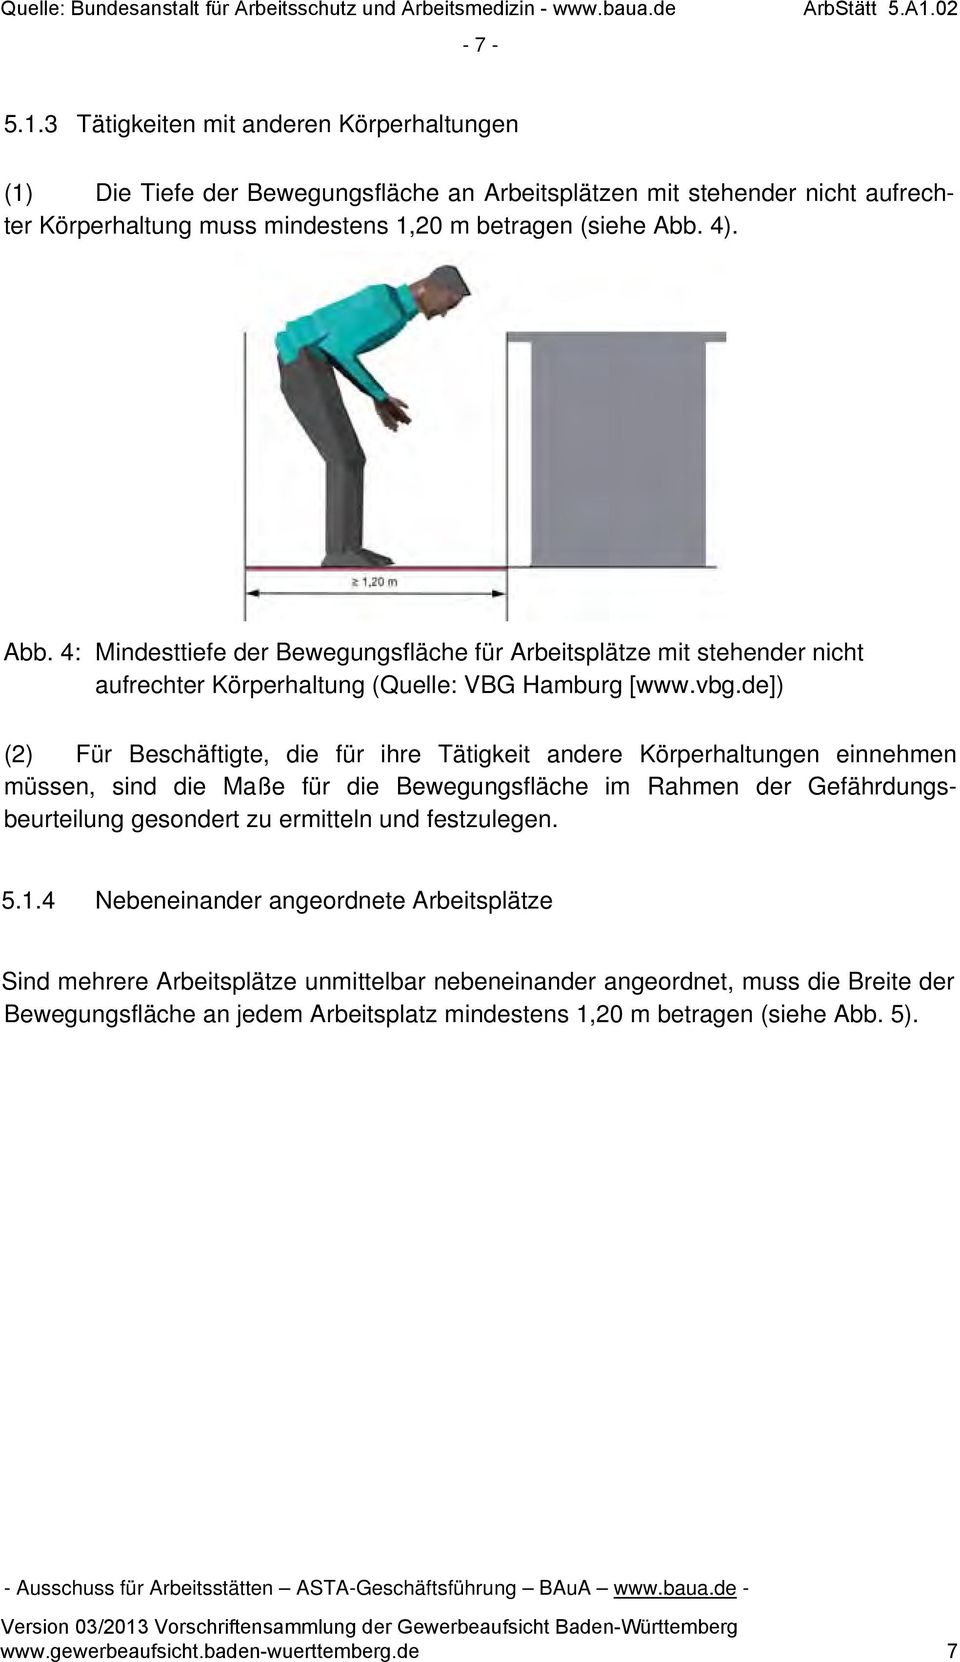 4). Abb. 4: Mindesttiefe der Bewegungsfläche für Arbeitsplätze mit stehender nicht aufrechter Körperhaltung (Quelle: VBG Hamburg [www.vbg.